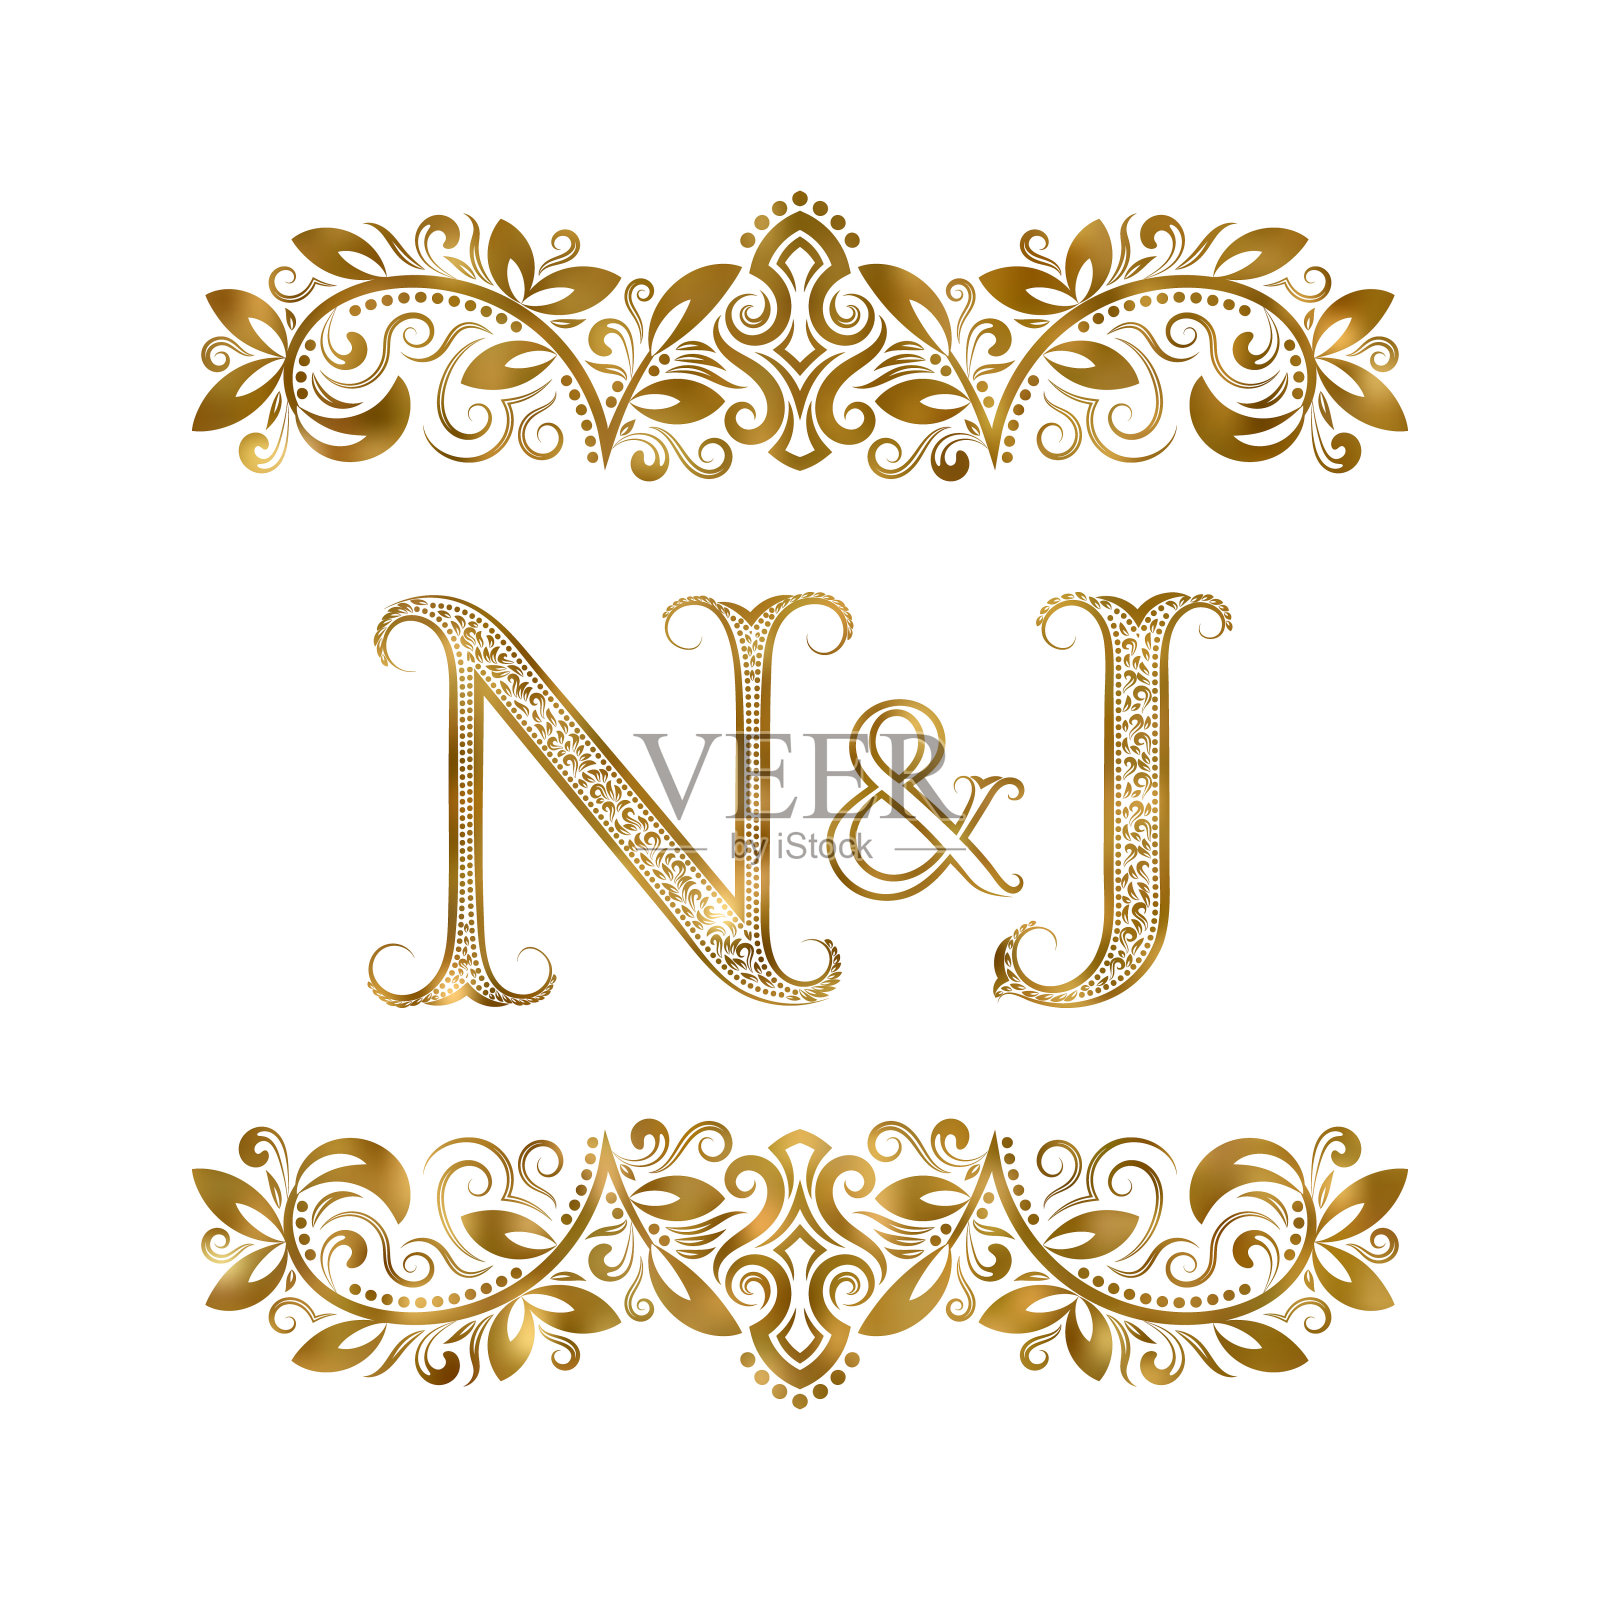 N和J vintage首字母符号。字母周围有装饰元素。皇室风格的婚礼或商业伙伴的字母组合。插画图片素材